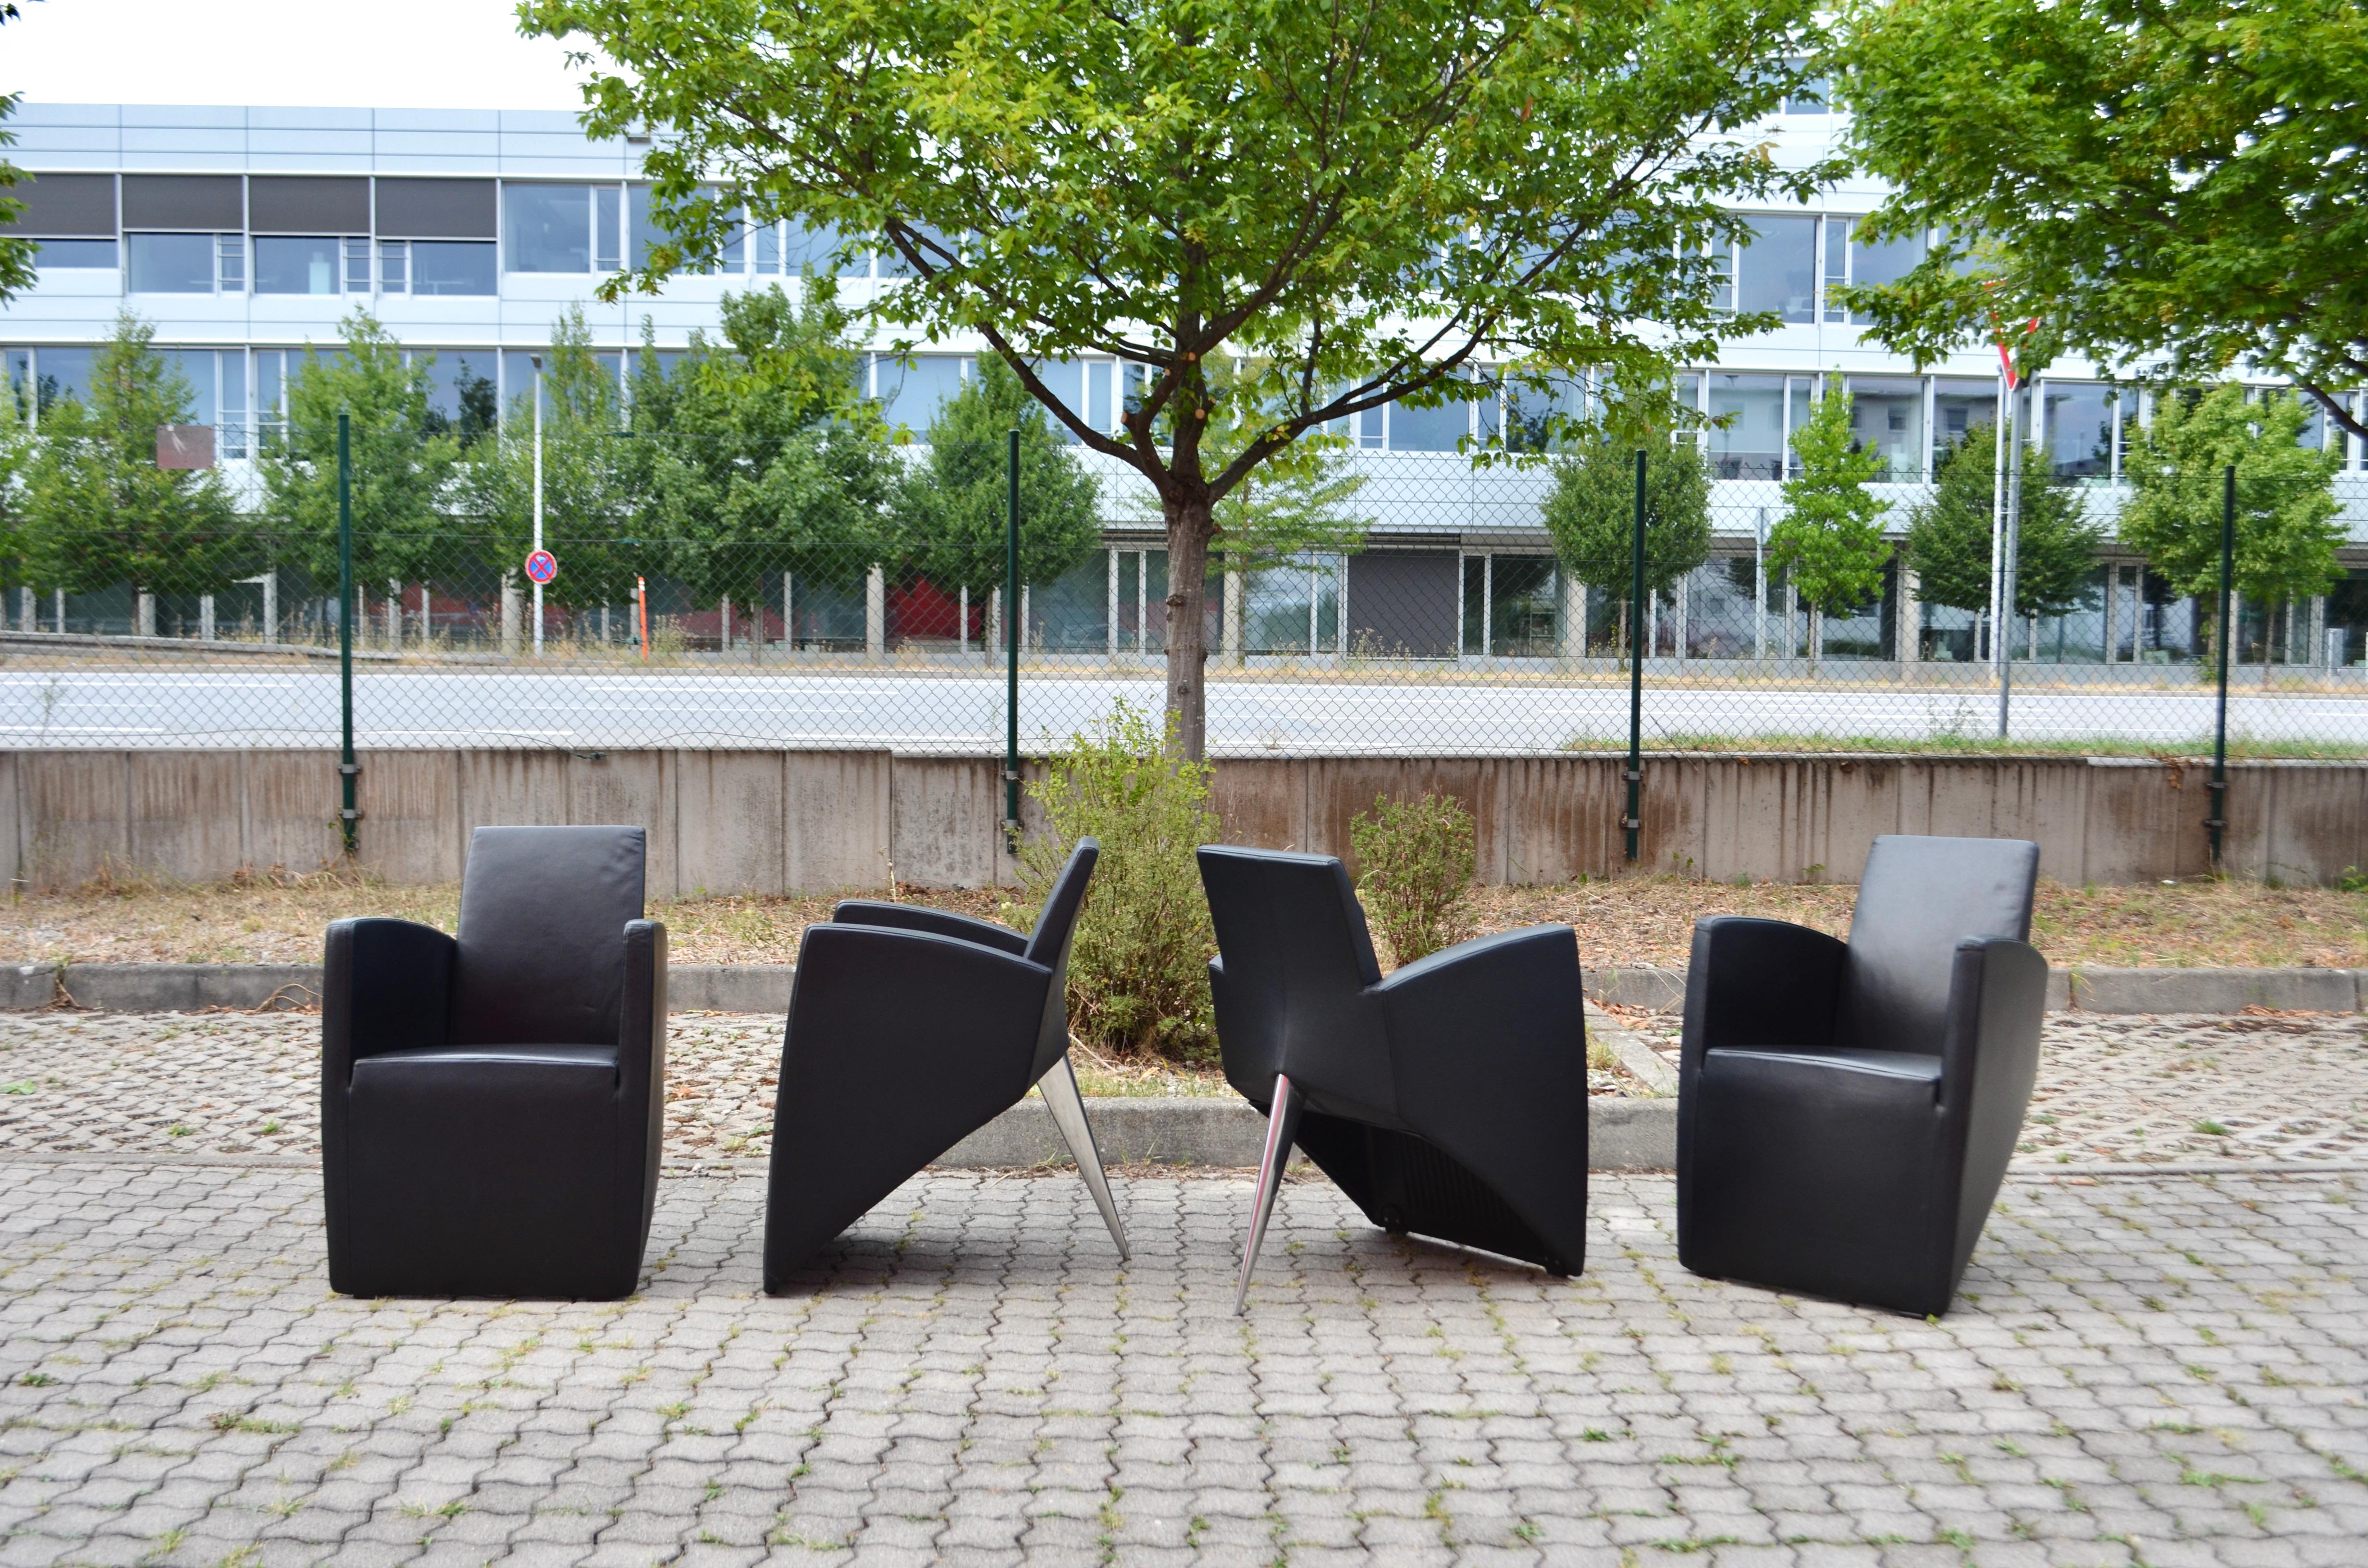 Ces chaises sont de véritables fauteuils de salle à manger iconiques conçus par Philippe Starck en 1987 pour la manufacture italienne Driade Aleph.
Le modèle porte le nom de l'homme politique français Jack Lang.
Un design graphique sculptural avec